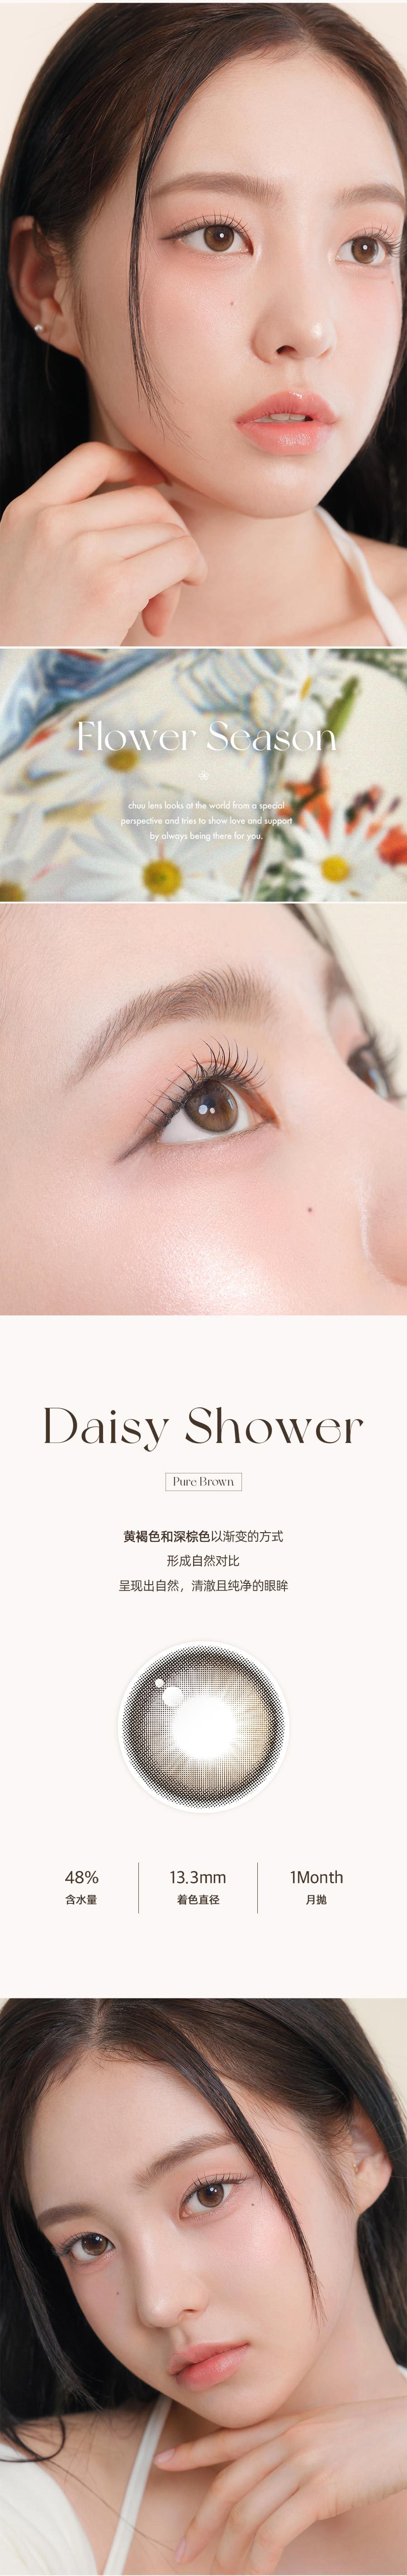 韩国 chuulens 月抛 Daisy Shower Pure Brown13.3mm 2片装 0度